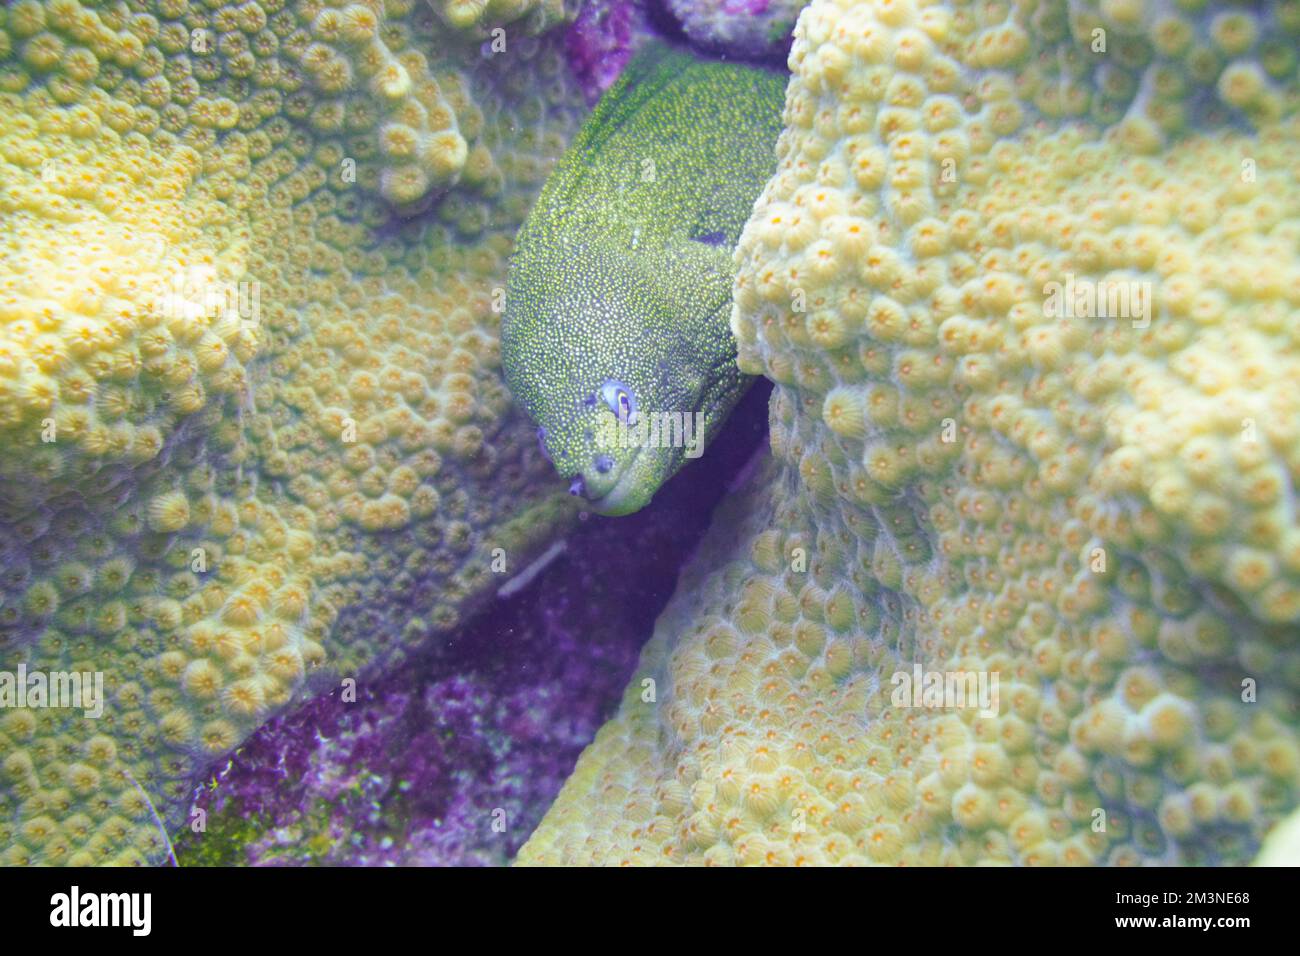 Una bella muraglia macchiata anguilla nella colorata barriera corallina. Scuba Diving fotografia subacquea Foto Stock